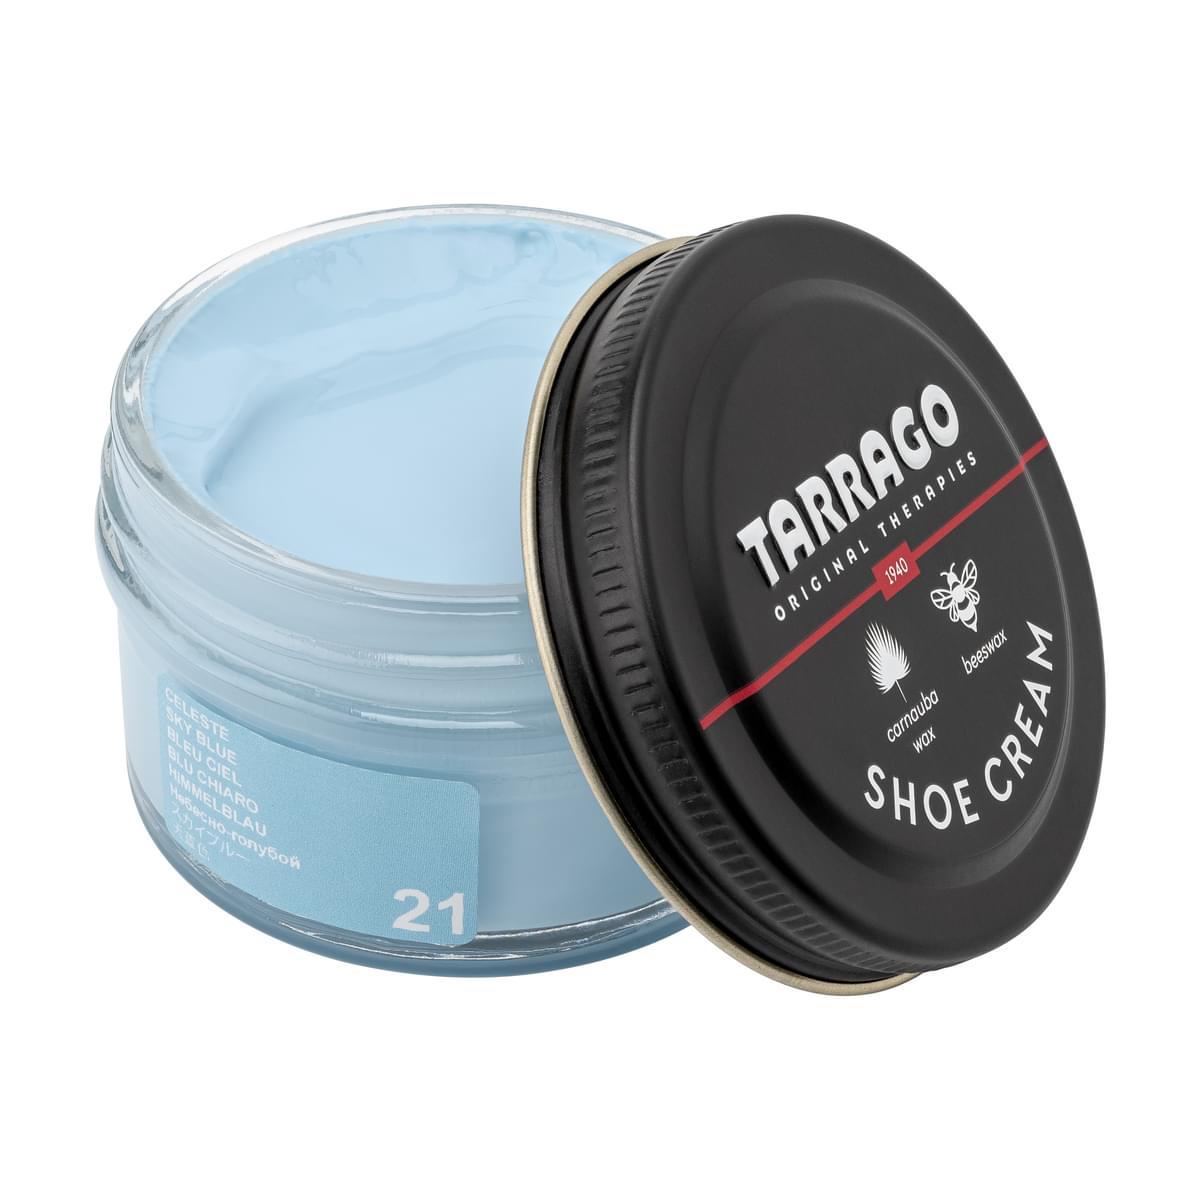 Tarrago Shoe Cream  - Sky Blue - 21